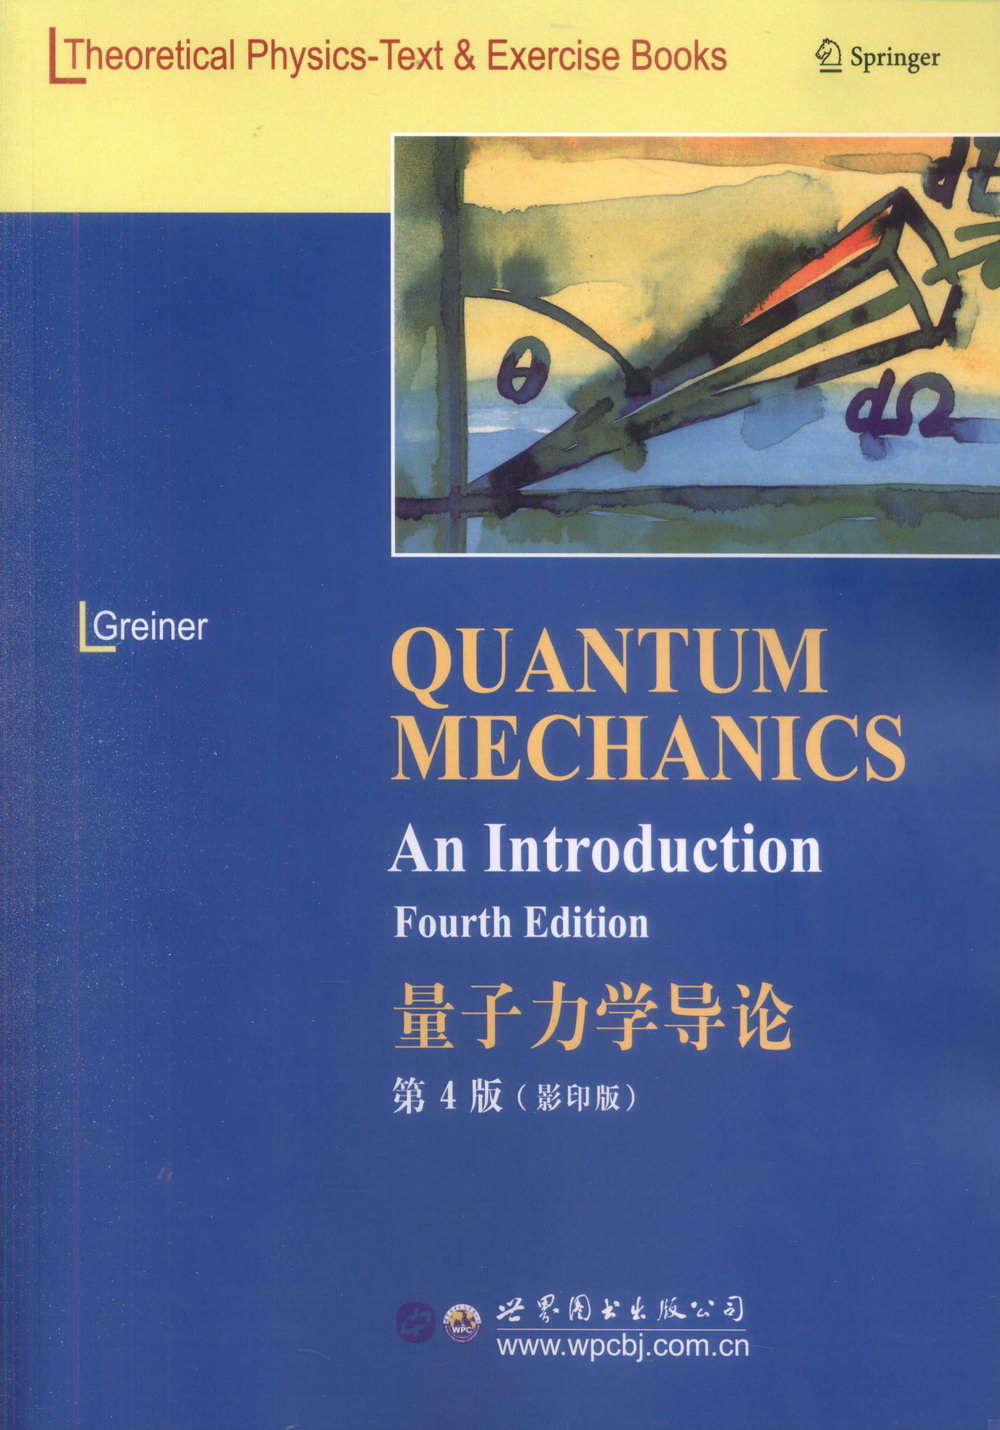 量子力學導論(第4版)(影印版)英文